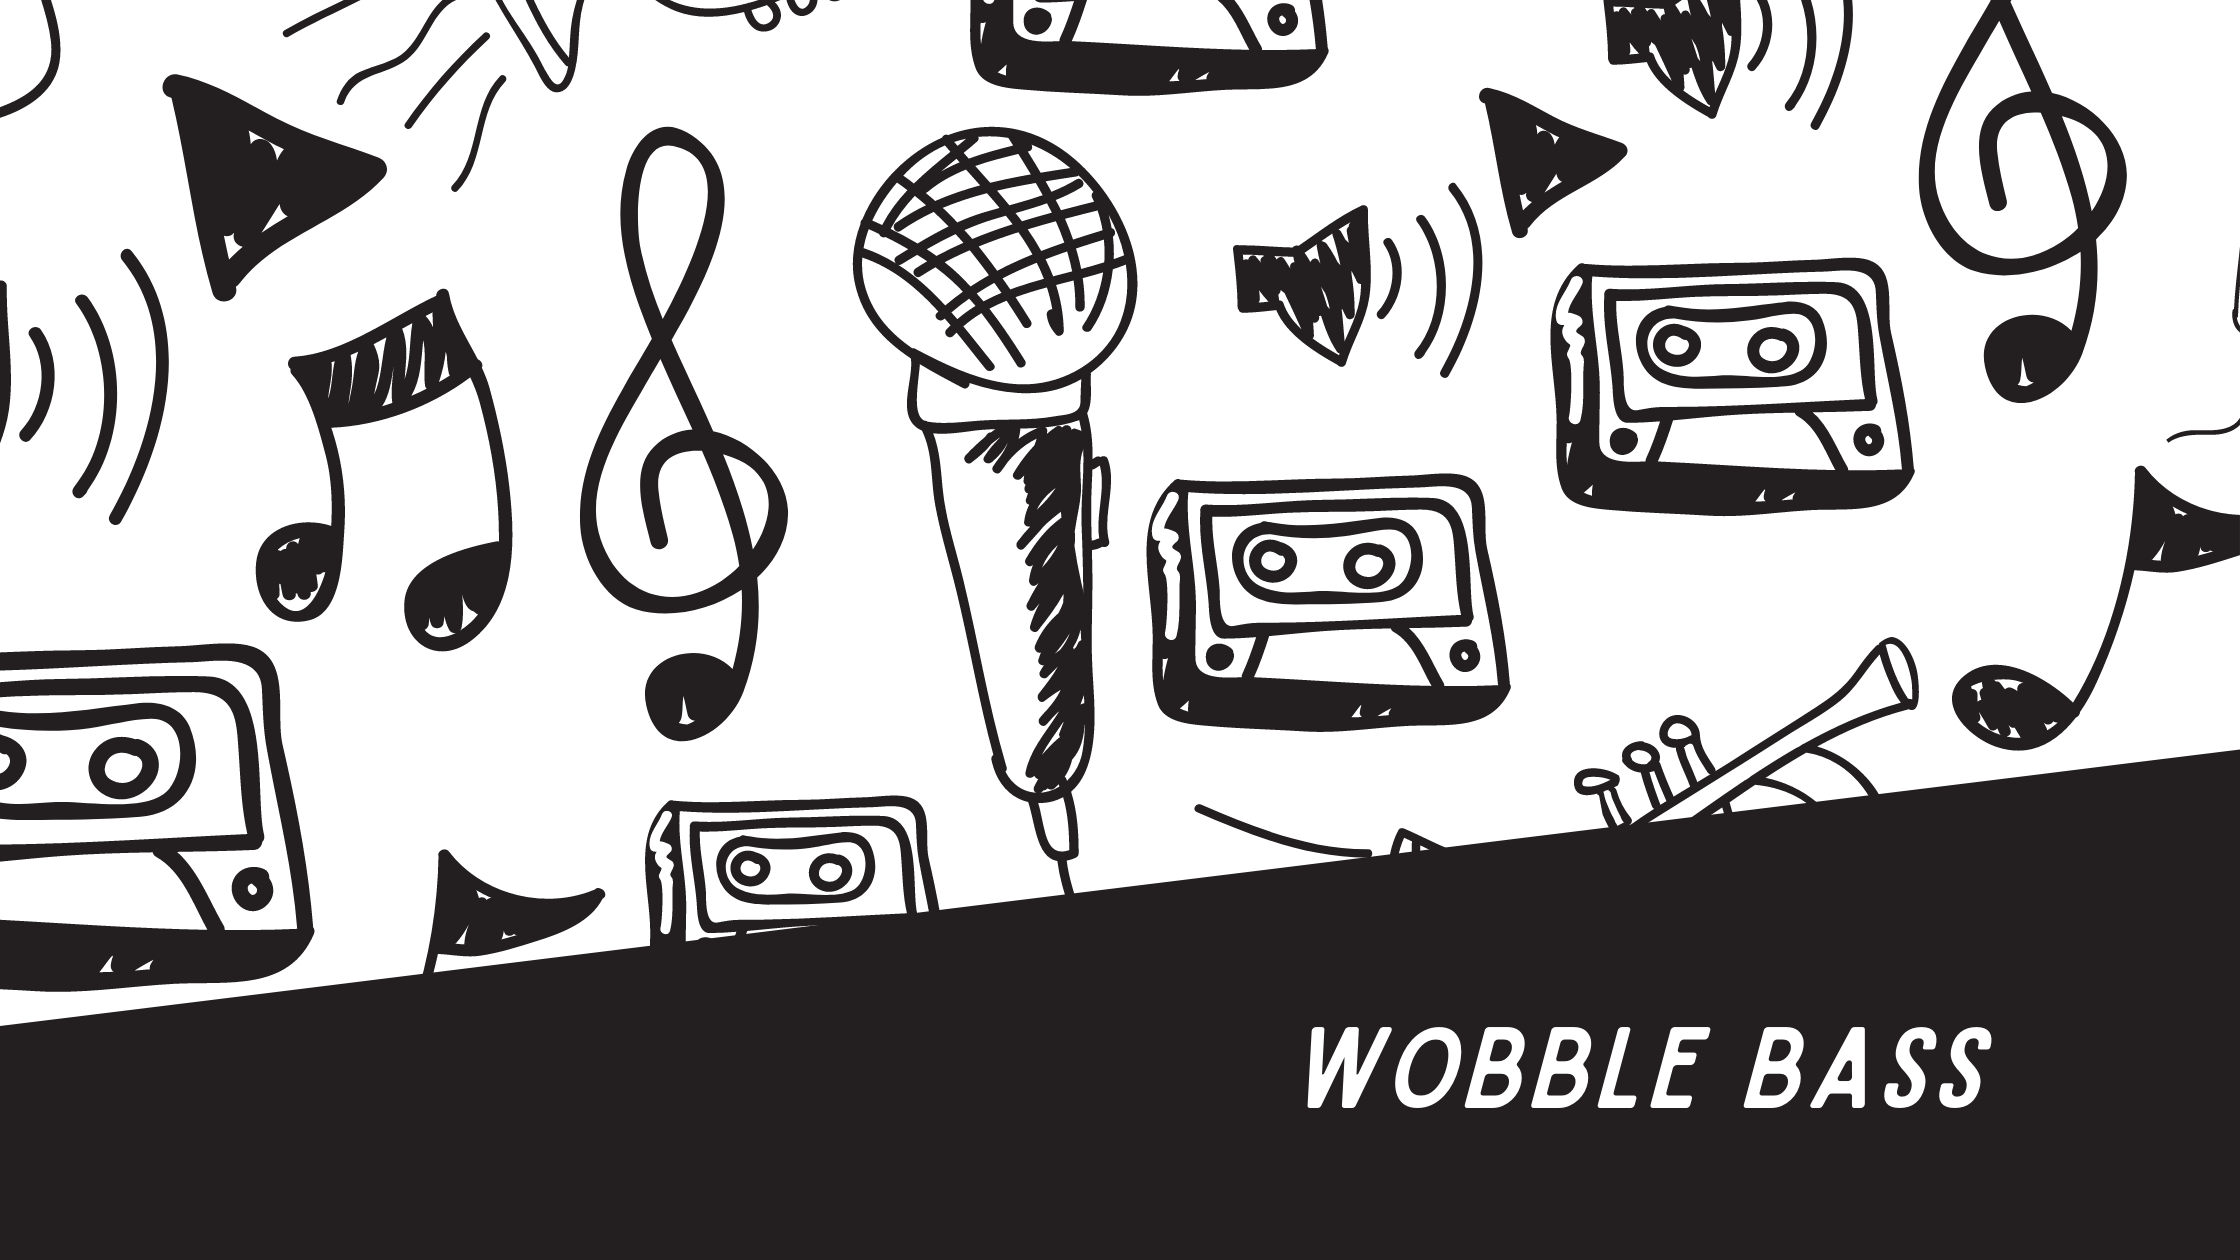 Wobble Bass